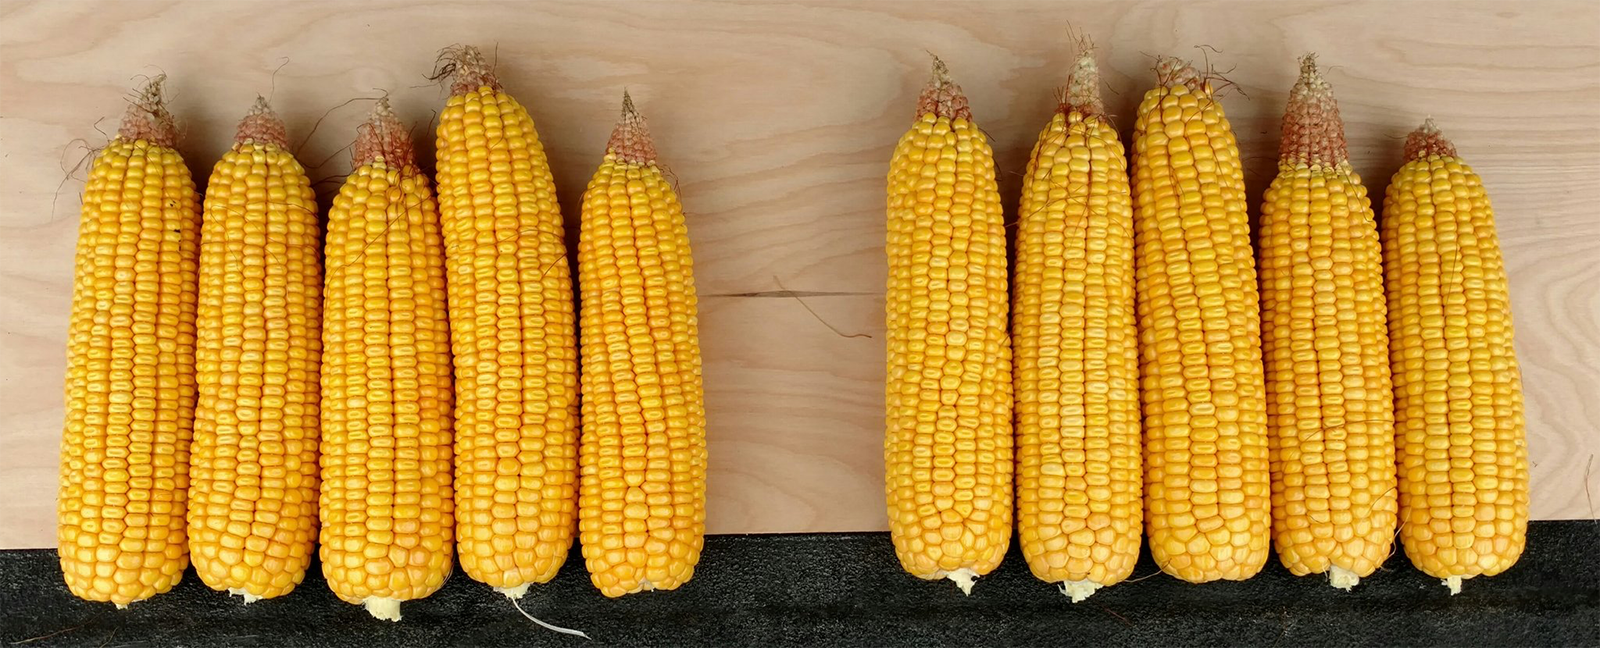 爱荷华州是产量预测中心对玉米生长条件和潜在产量进行模拟的10个玉米带州之一，爱荷华州是其中之一(马克·利希特摄)